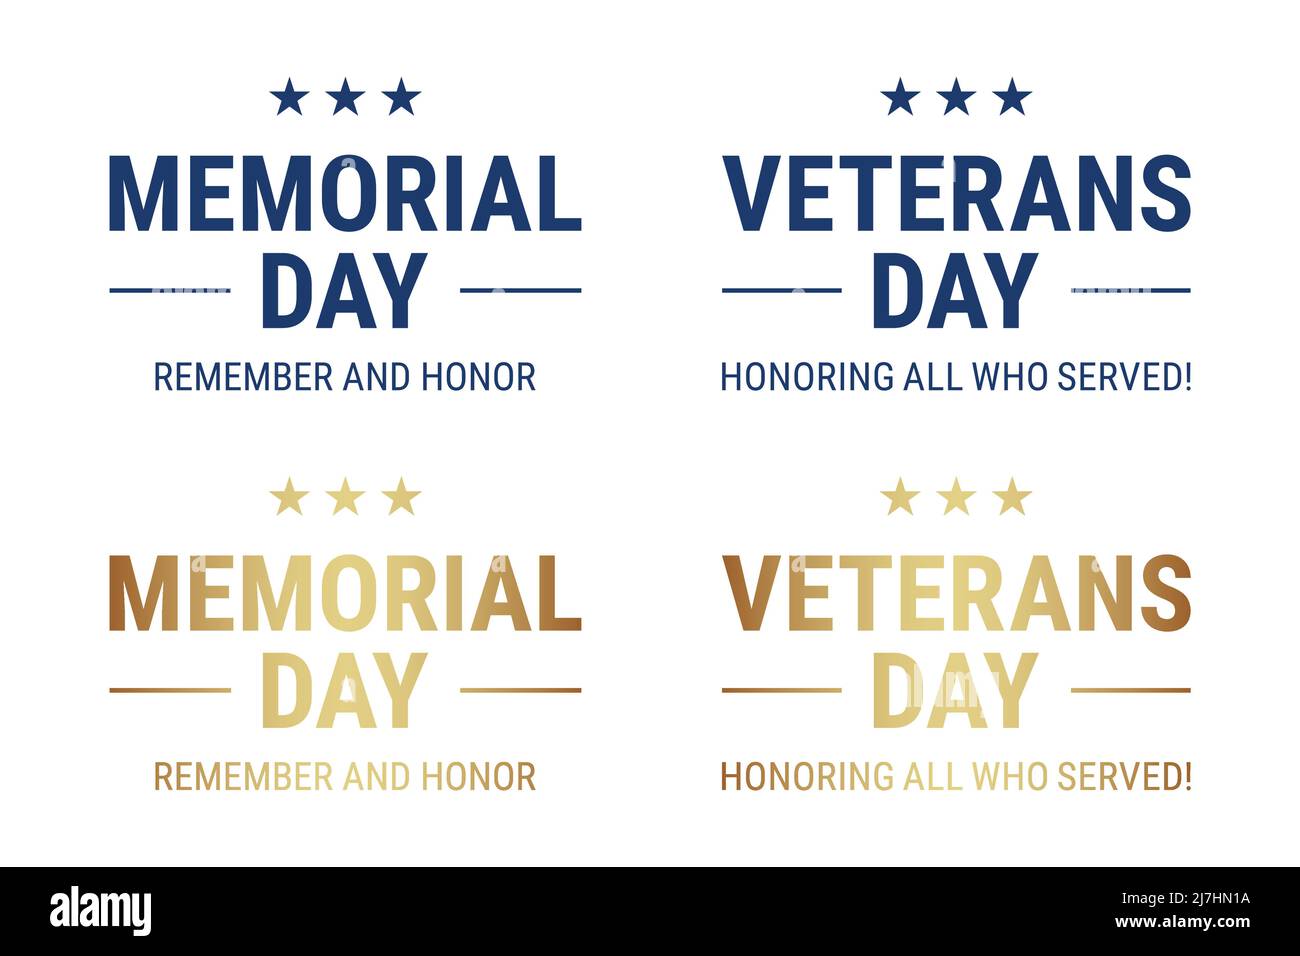 Memorial Day und Veterans Day Grußtext-Vektor-Set, in goldenen und blauen Farben, isoliert auf weißem Hintergrund. Stock Vektor